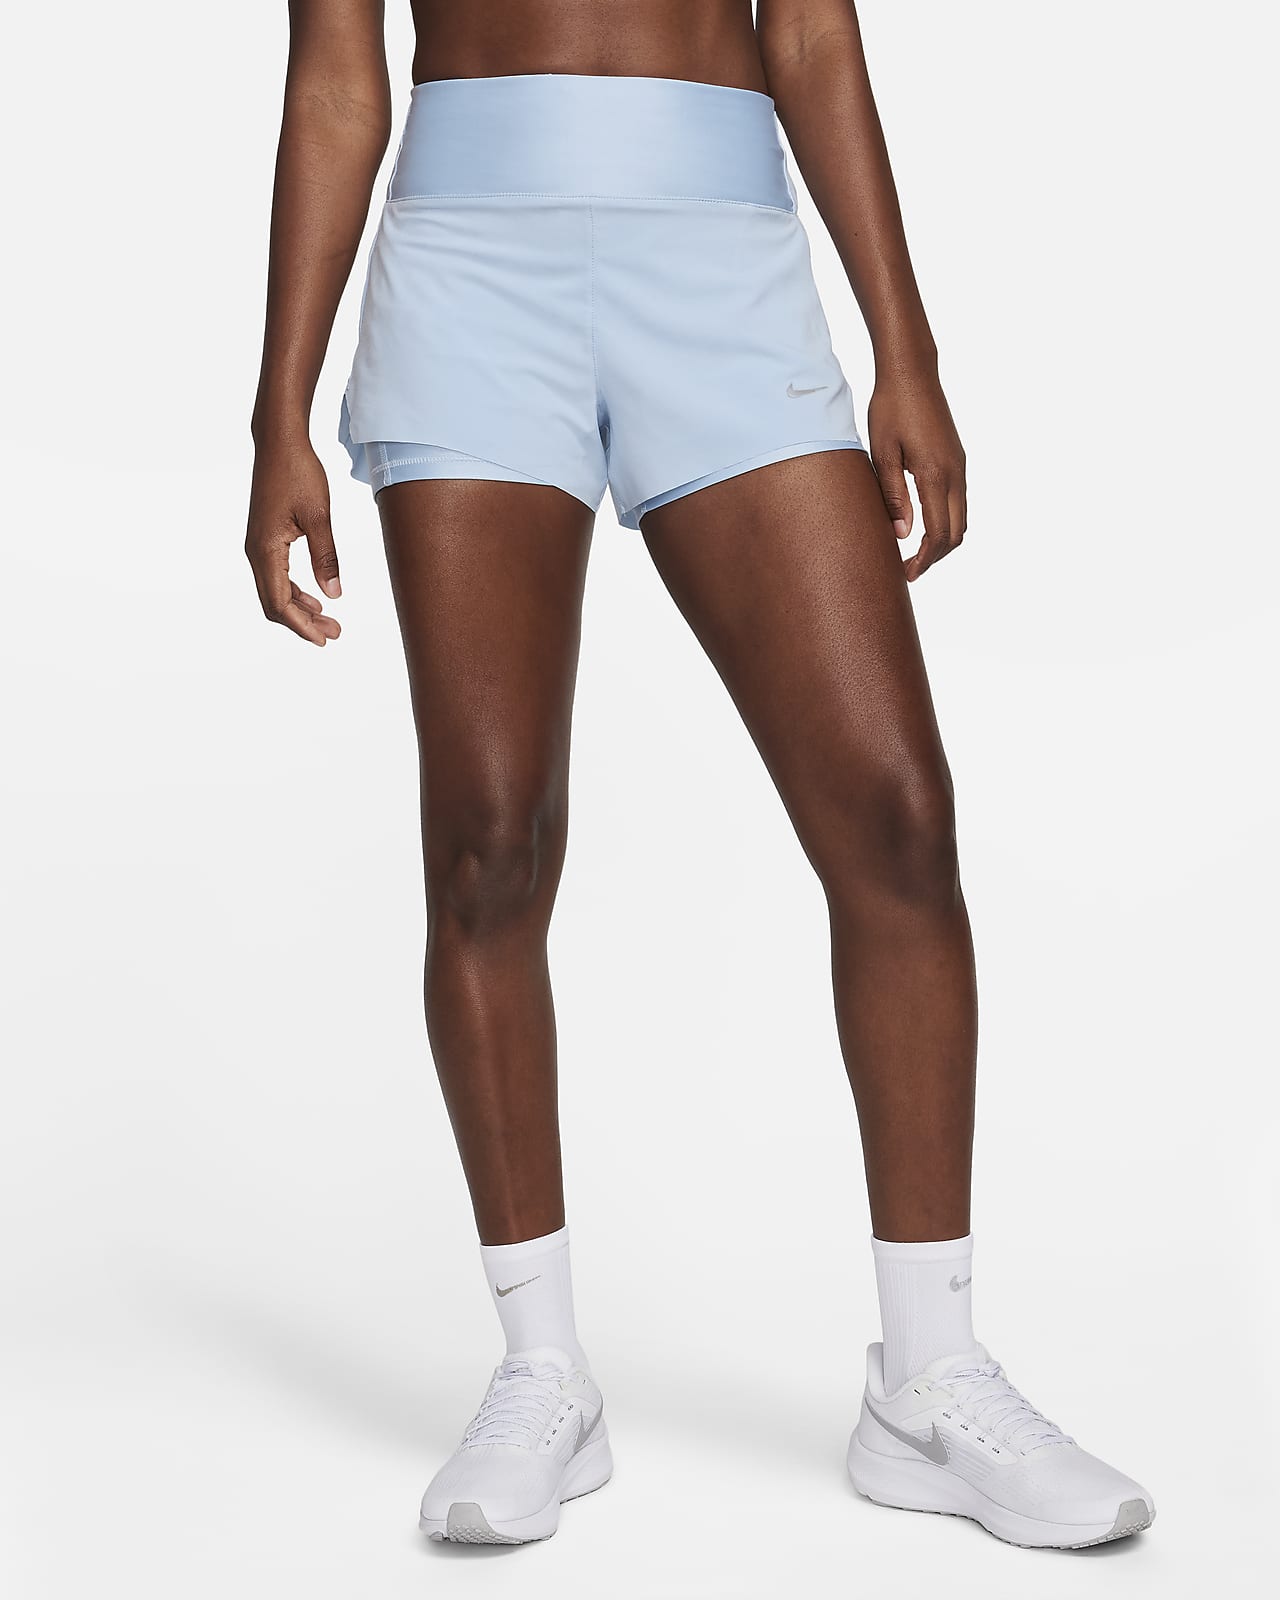 Γυναικείο σορτς για τρέξιμο μεσαίου ύψους 2 σε 1 με τσέπες Nike Dri-FIT Swift 8 cm